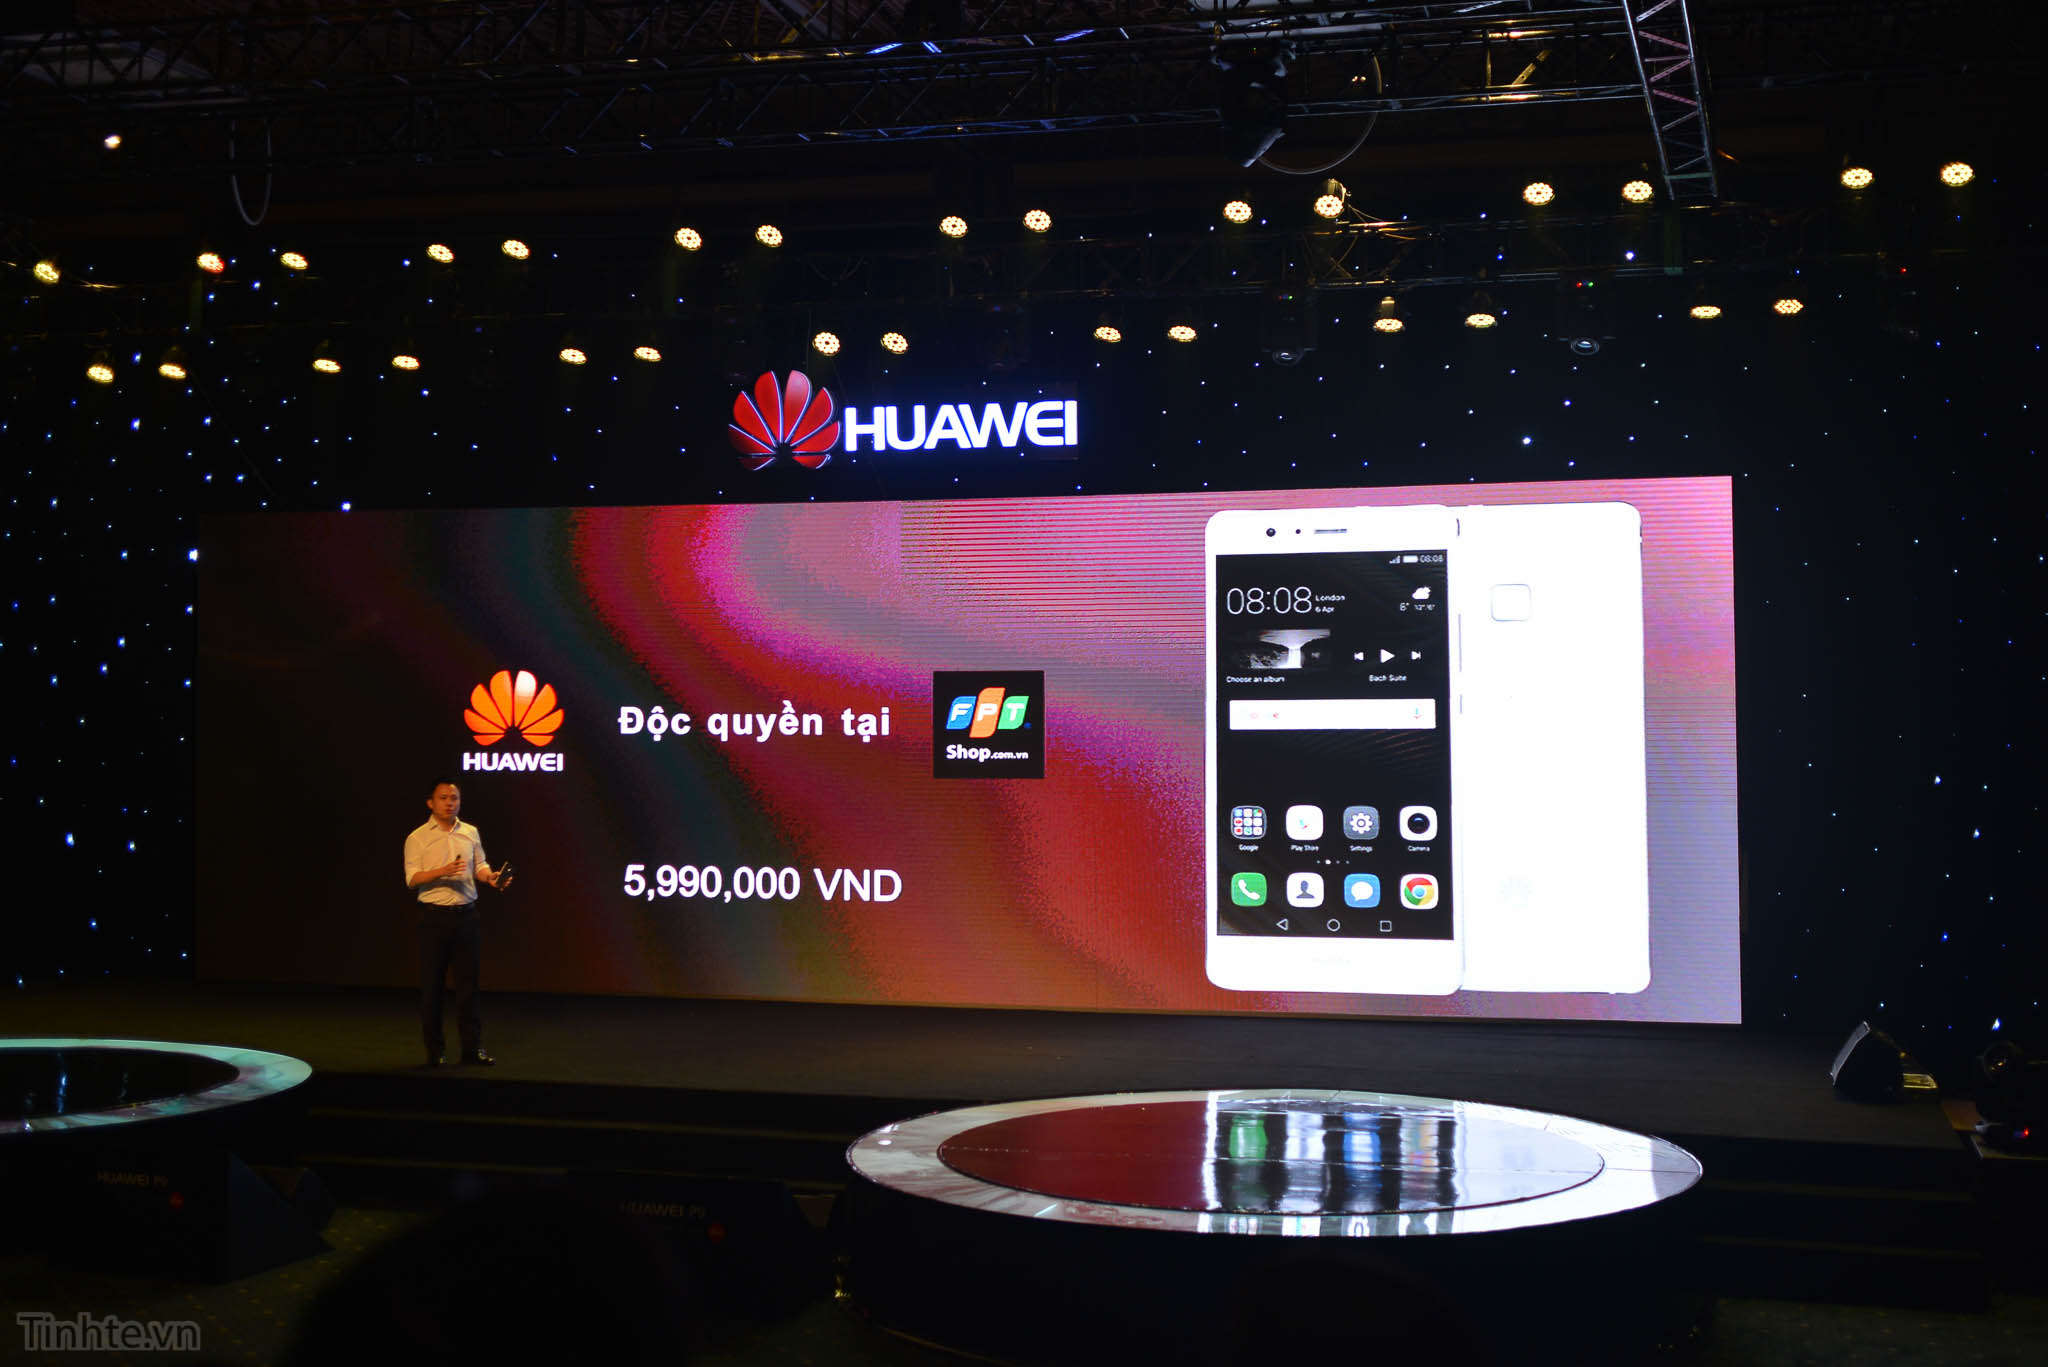 Huawei_P9_tinhte.vn-4.jpg